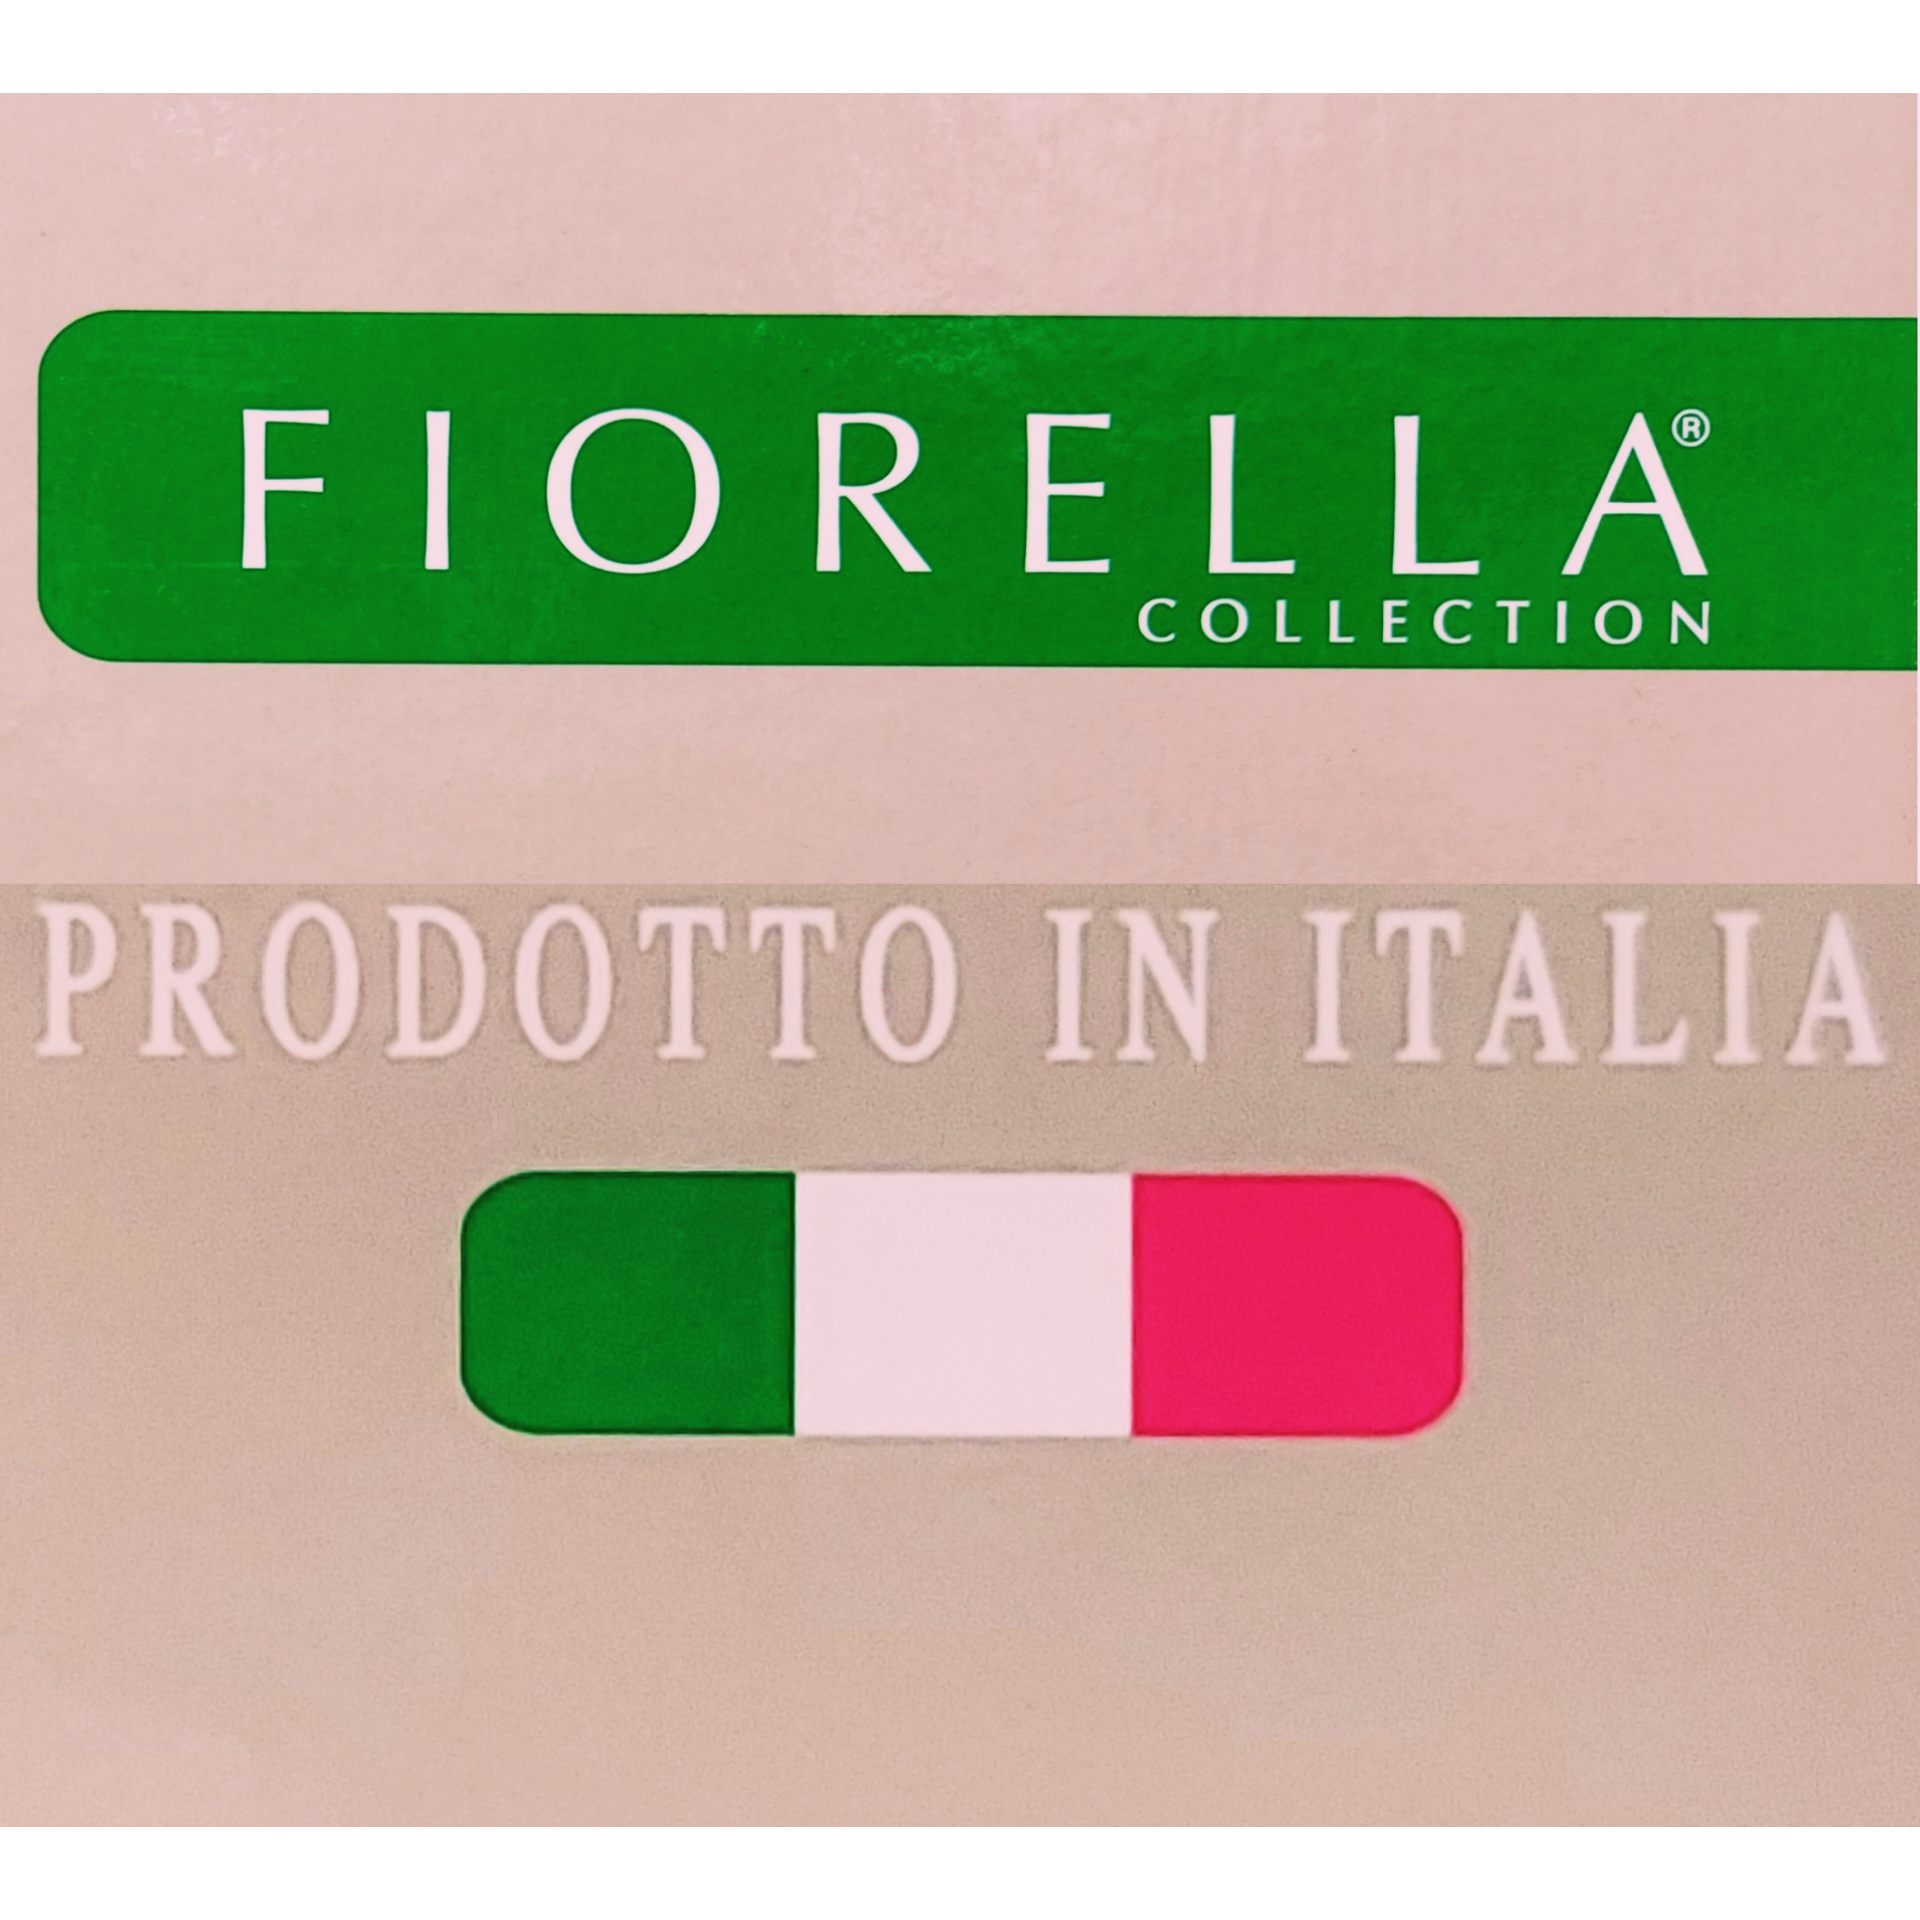 Fiorella Collection